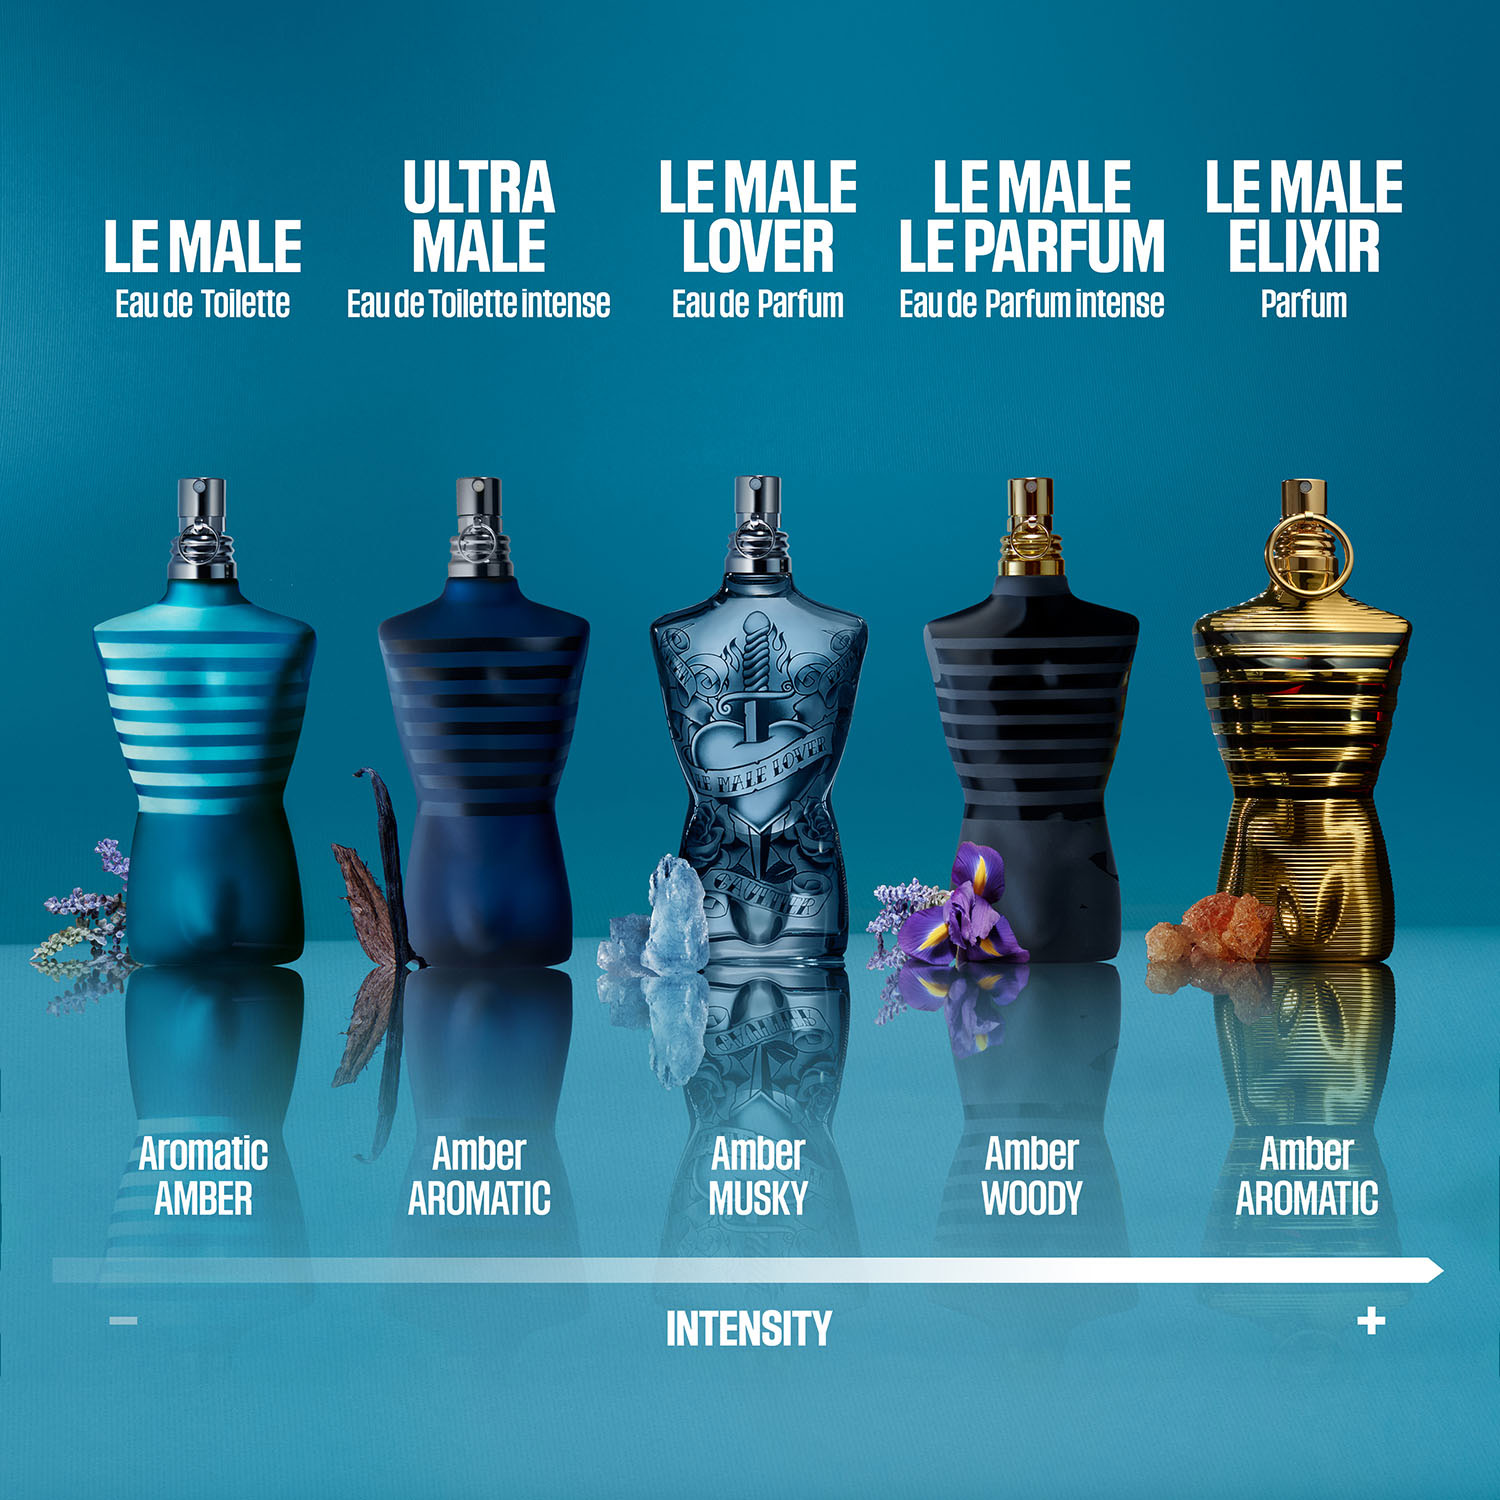 Jean Paul Gaultier Le Male Lover Limited Edition Eau de Parfum 125ml